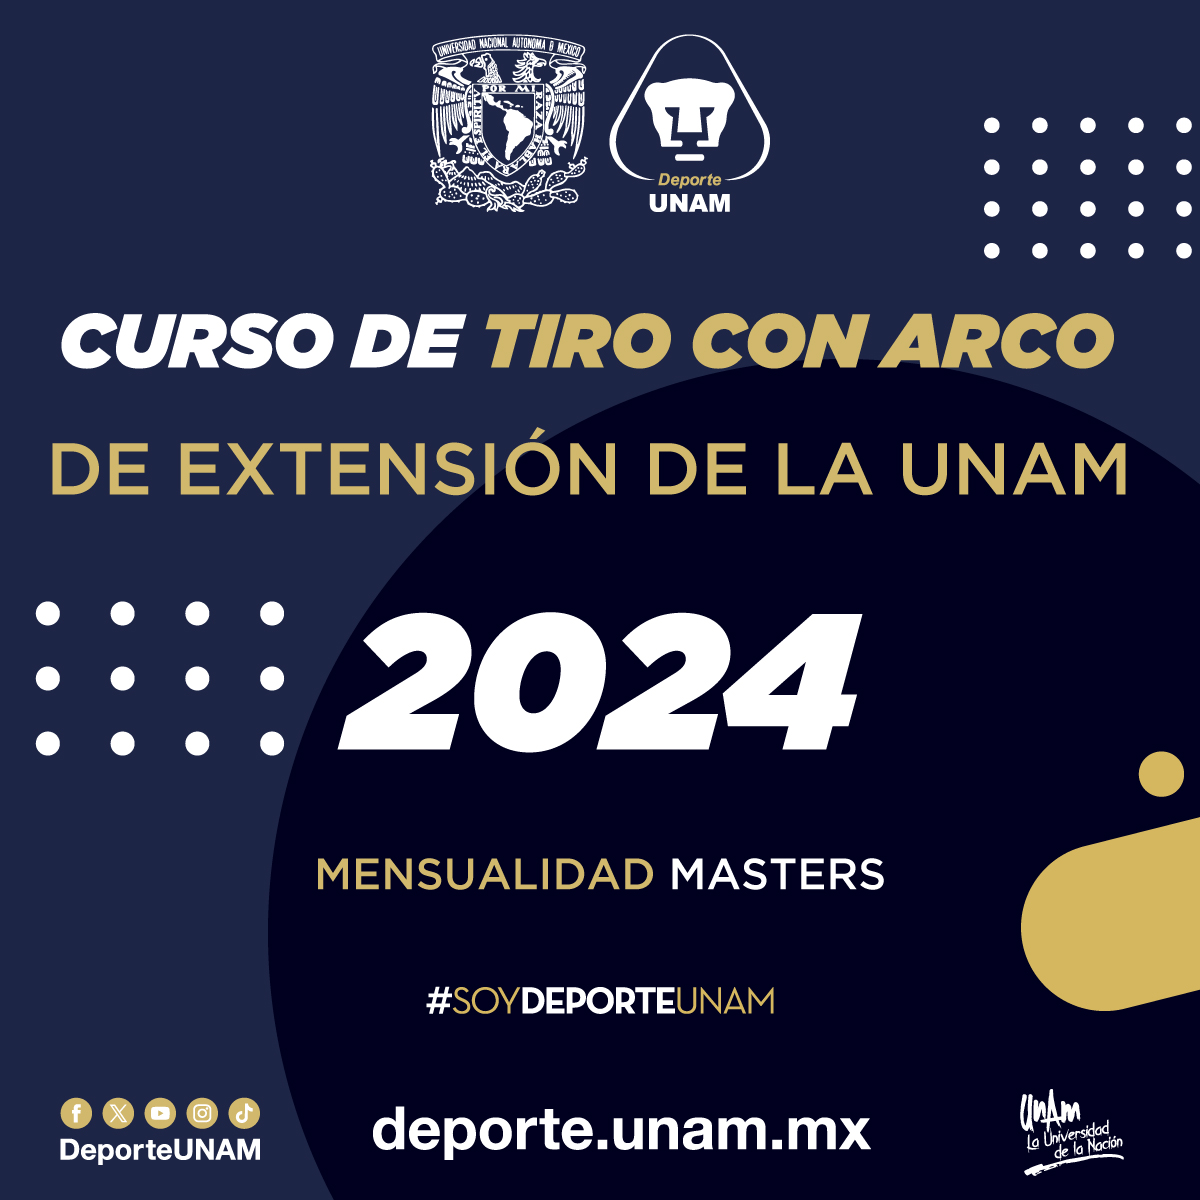 CURSO DE TIRO CON ARCO DE EXTENSIÓN DE LA UNAM 2024 MENSUALIDAD MASTERS